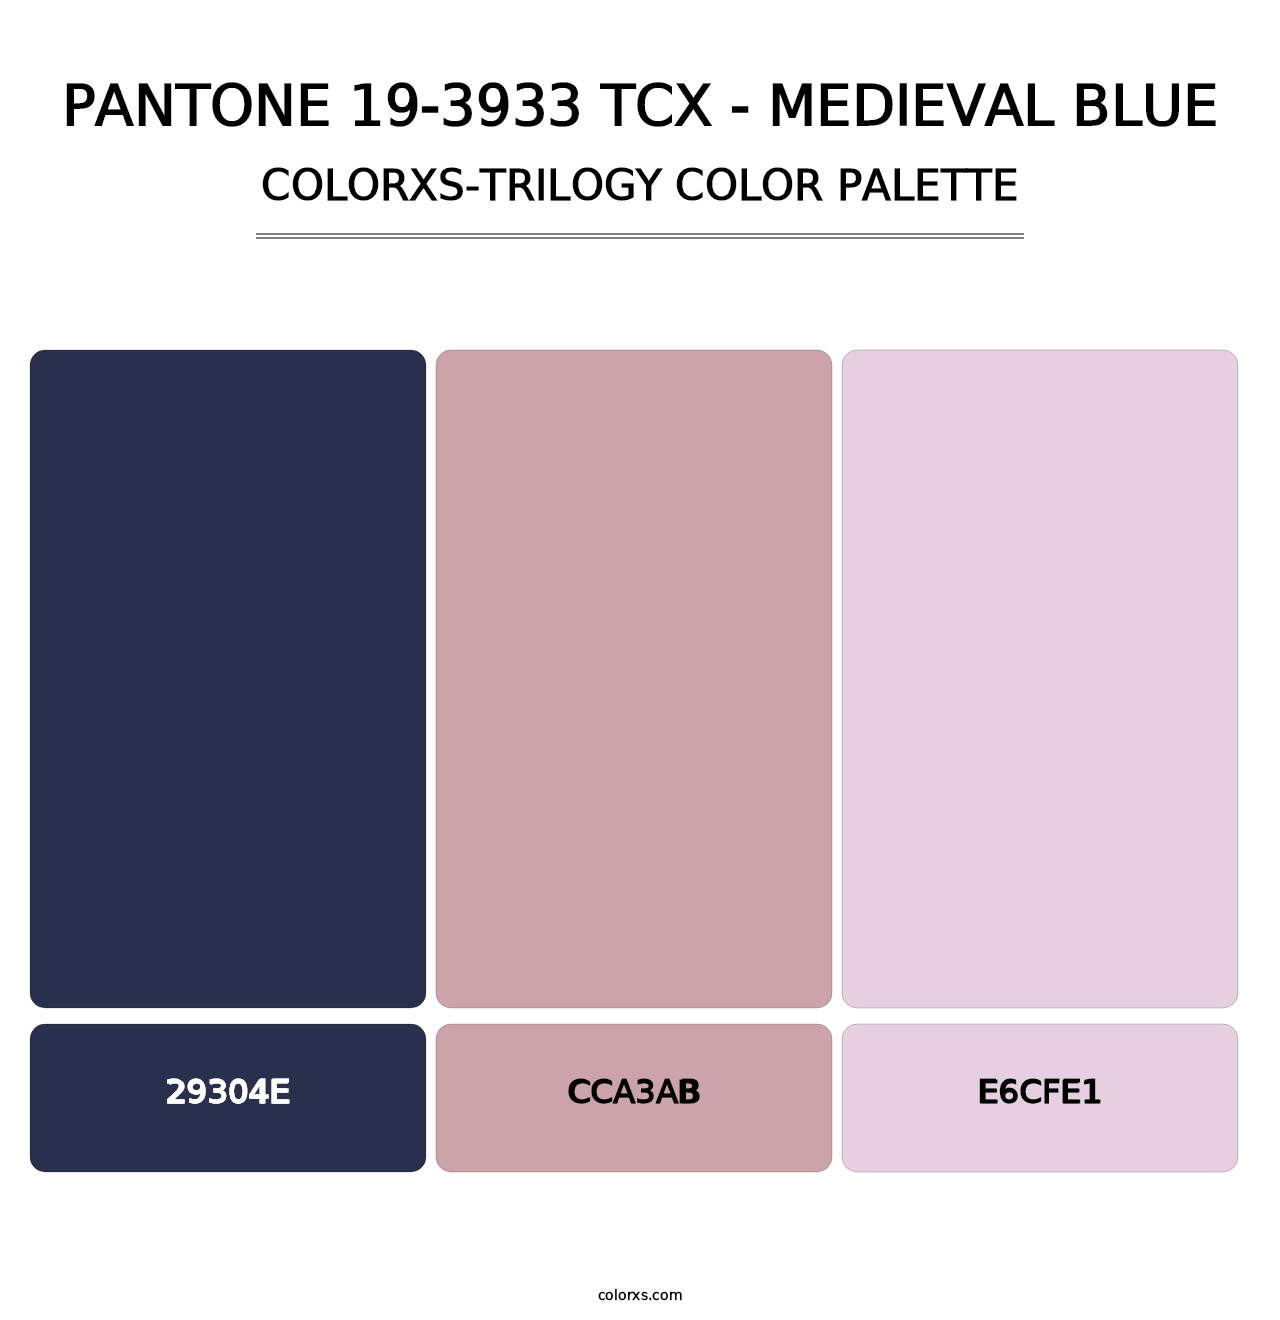 PANTONE 19-3933 TCX - Medieval Blue - Colorxs Trilogy Palette